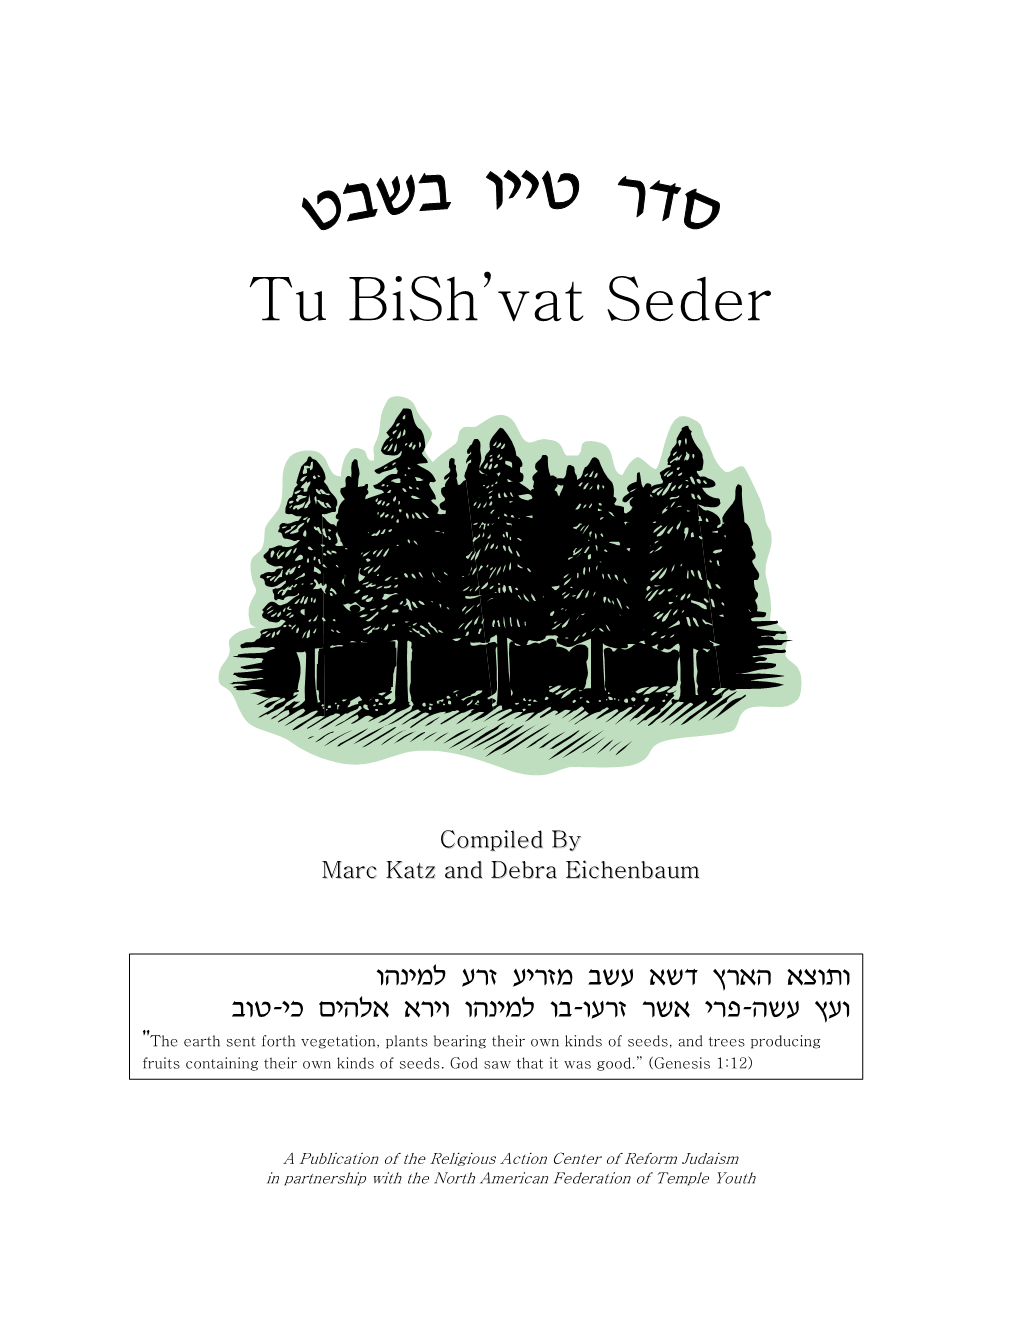 Seder for Tu Bish'vat